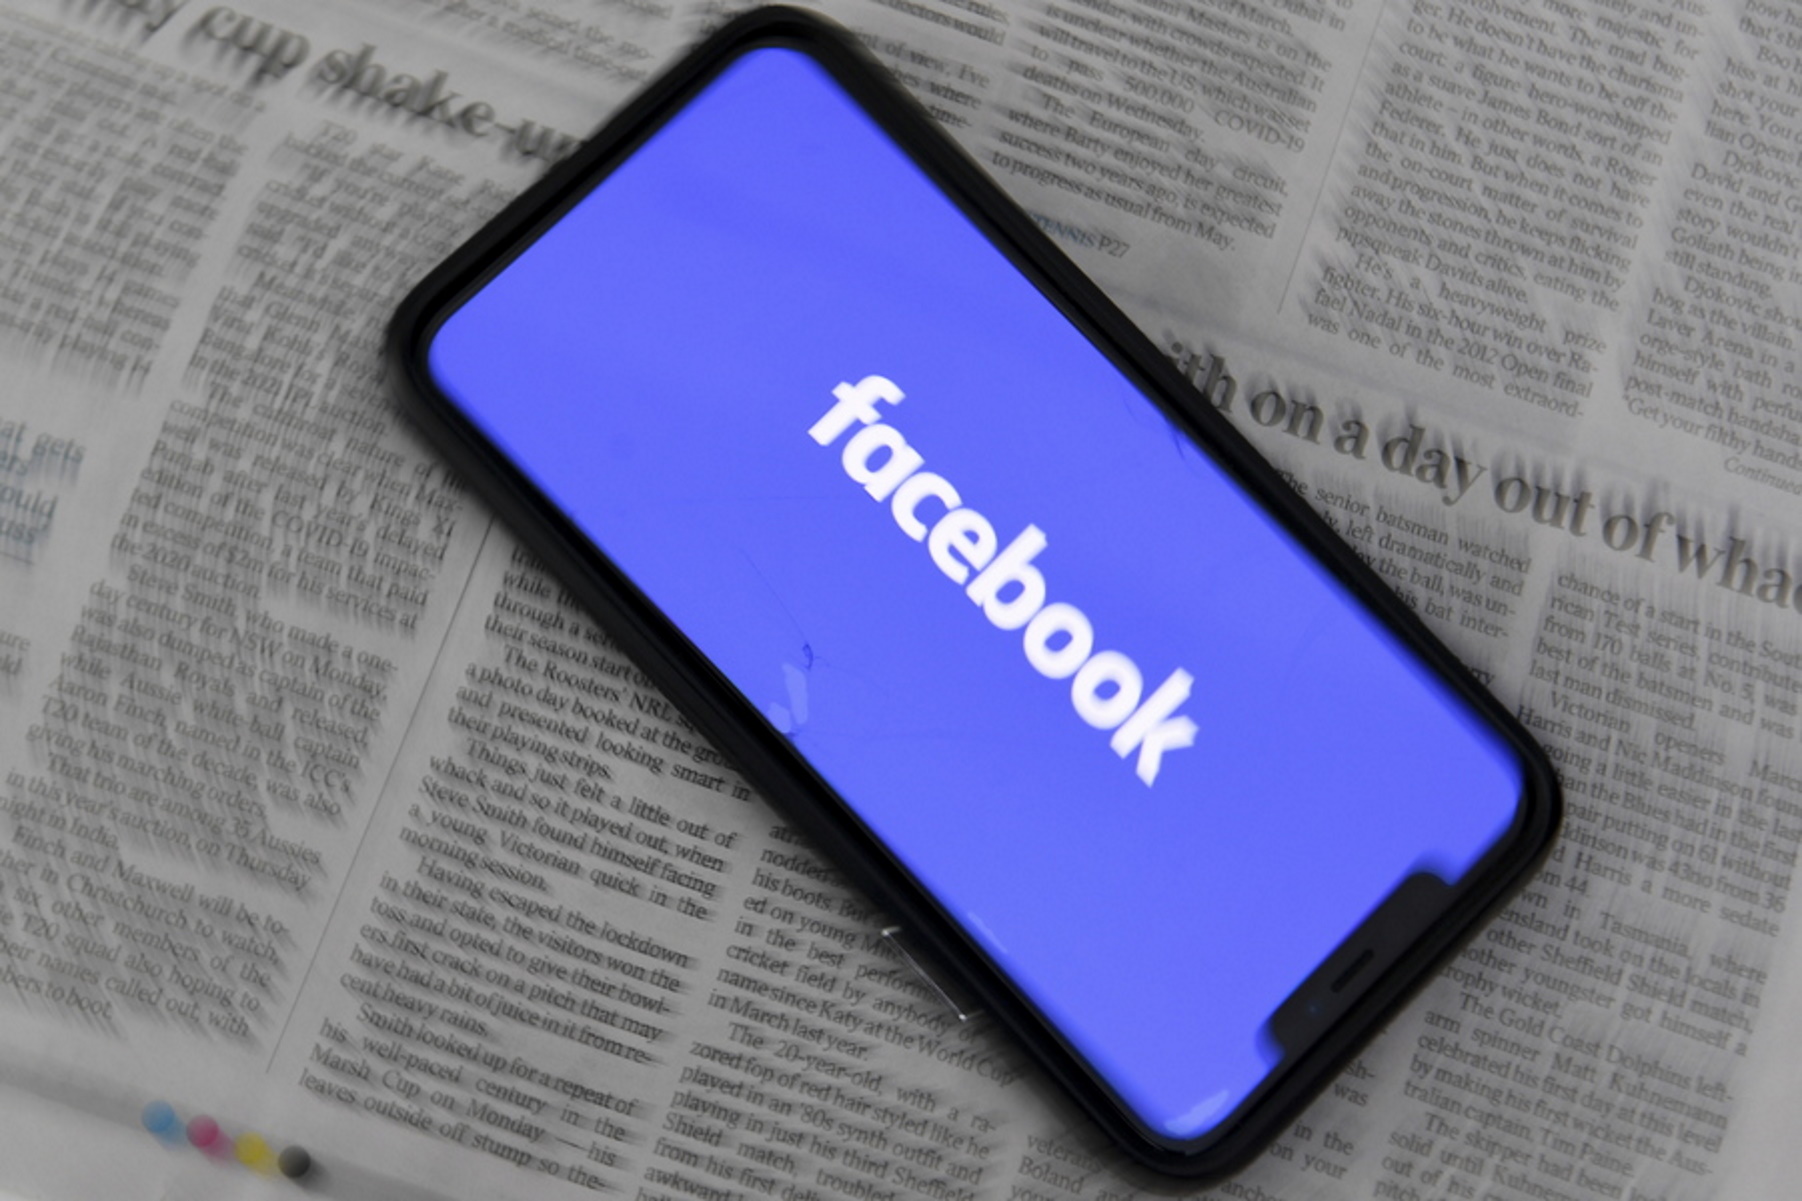 Φήμες ότι το Facebook σχεδιάζει να αλλάξει το όνομα του και μάλιστα πολύ σύντομα